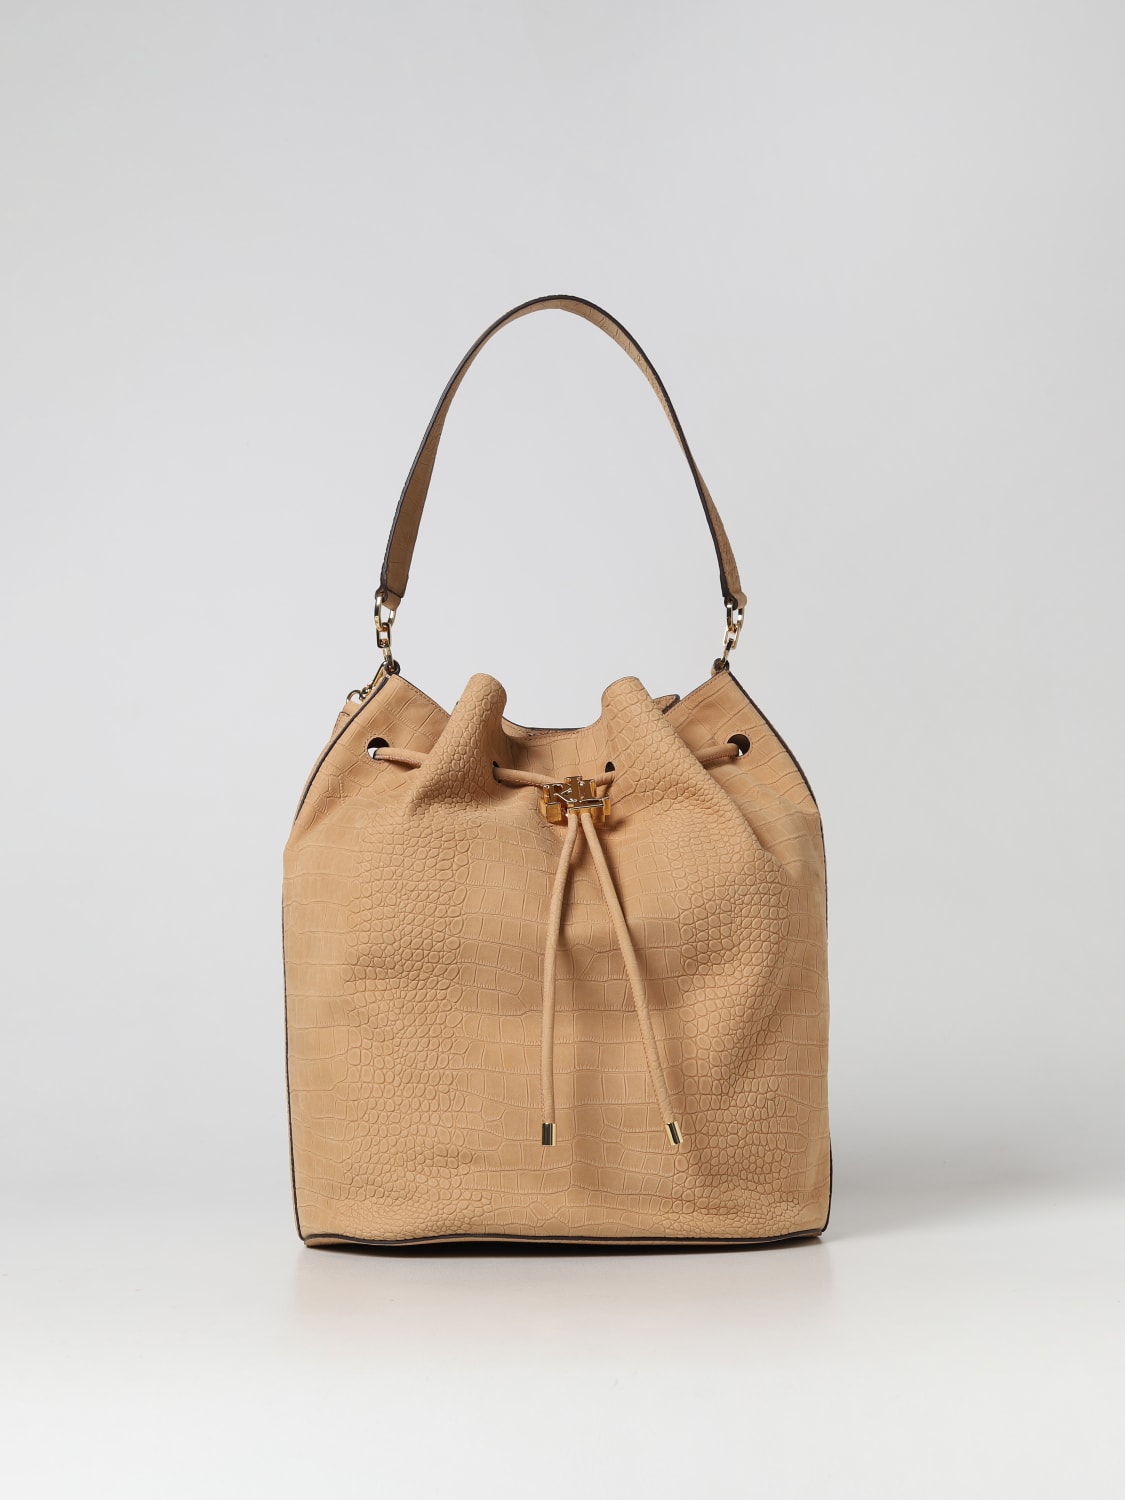 Ralph Lauren Women's Bags